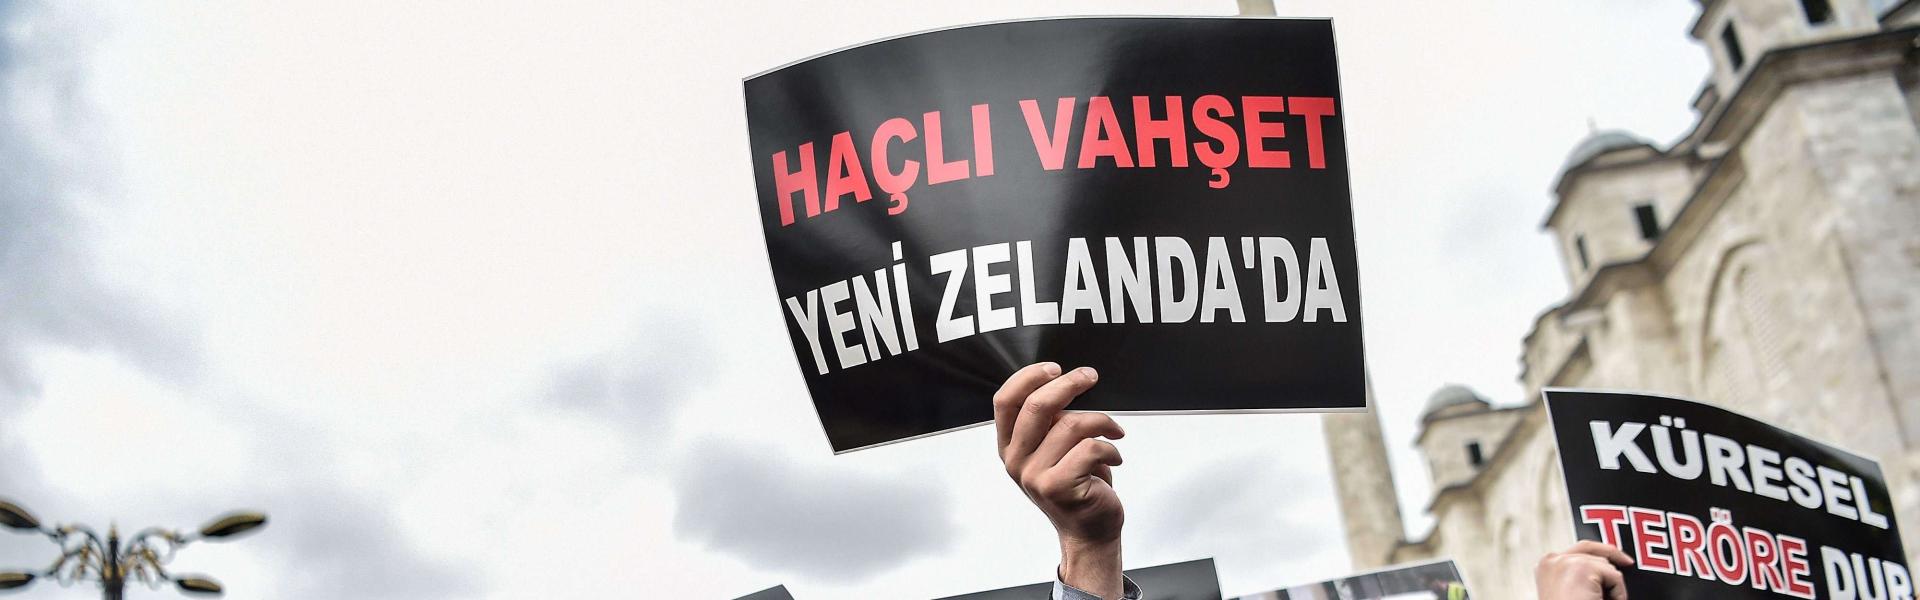 Crusaders, masked enemies and the Viennese: Turkey’s enemies of the week 6